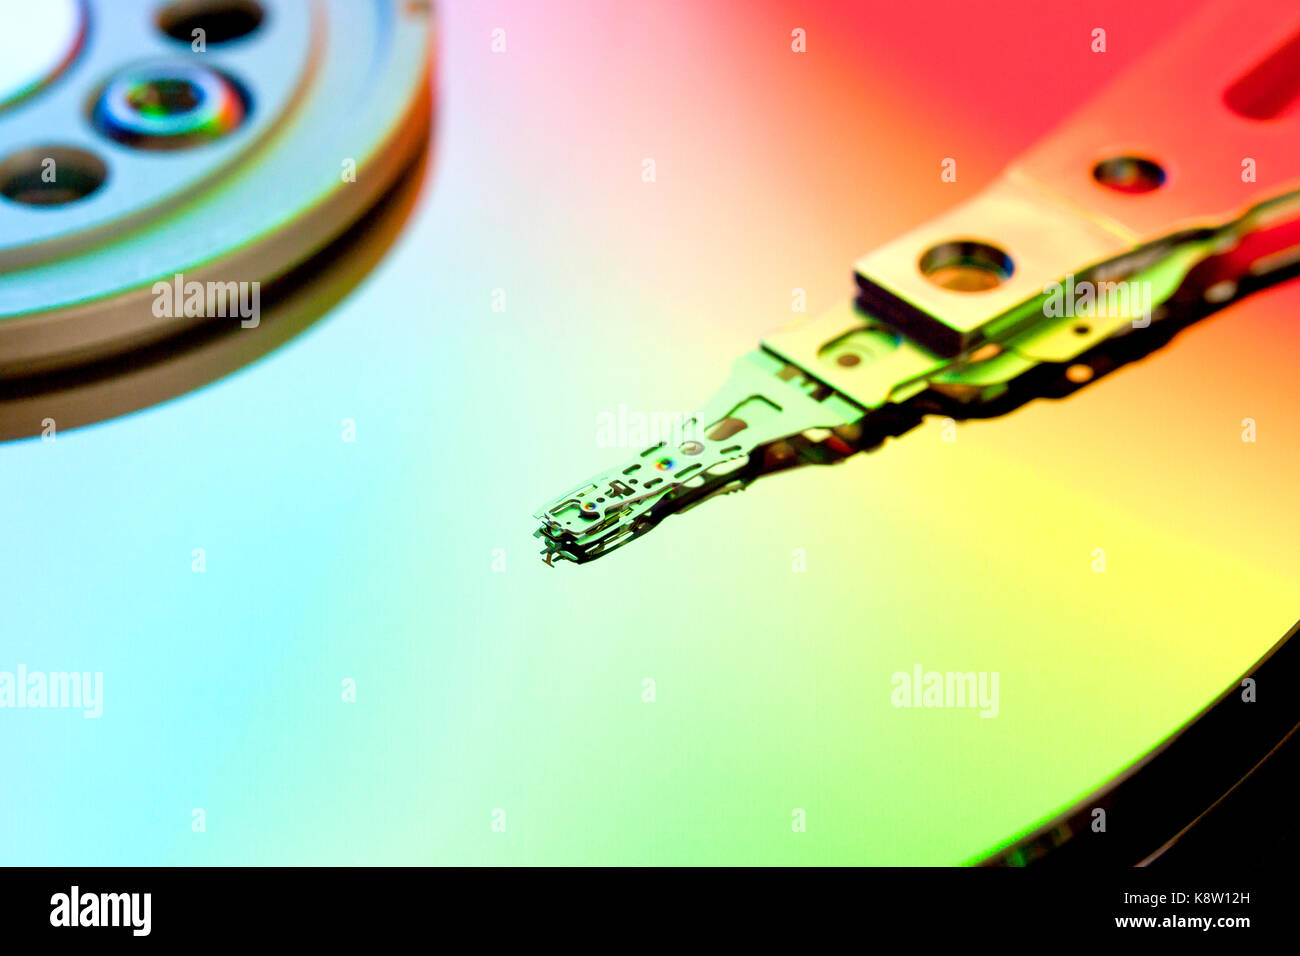 Festplatte platter und Schreib-/Lesekopf (HDD Schreib-/Lesekopf, Festplatte) Stockfoto